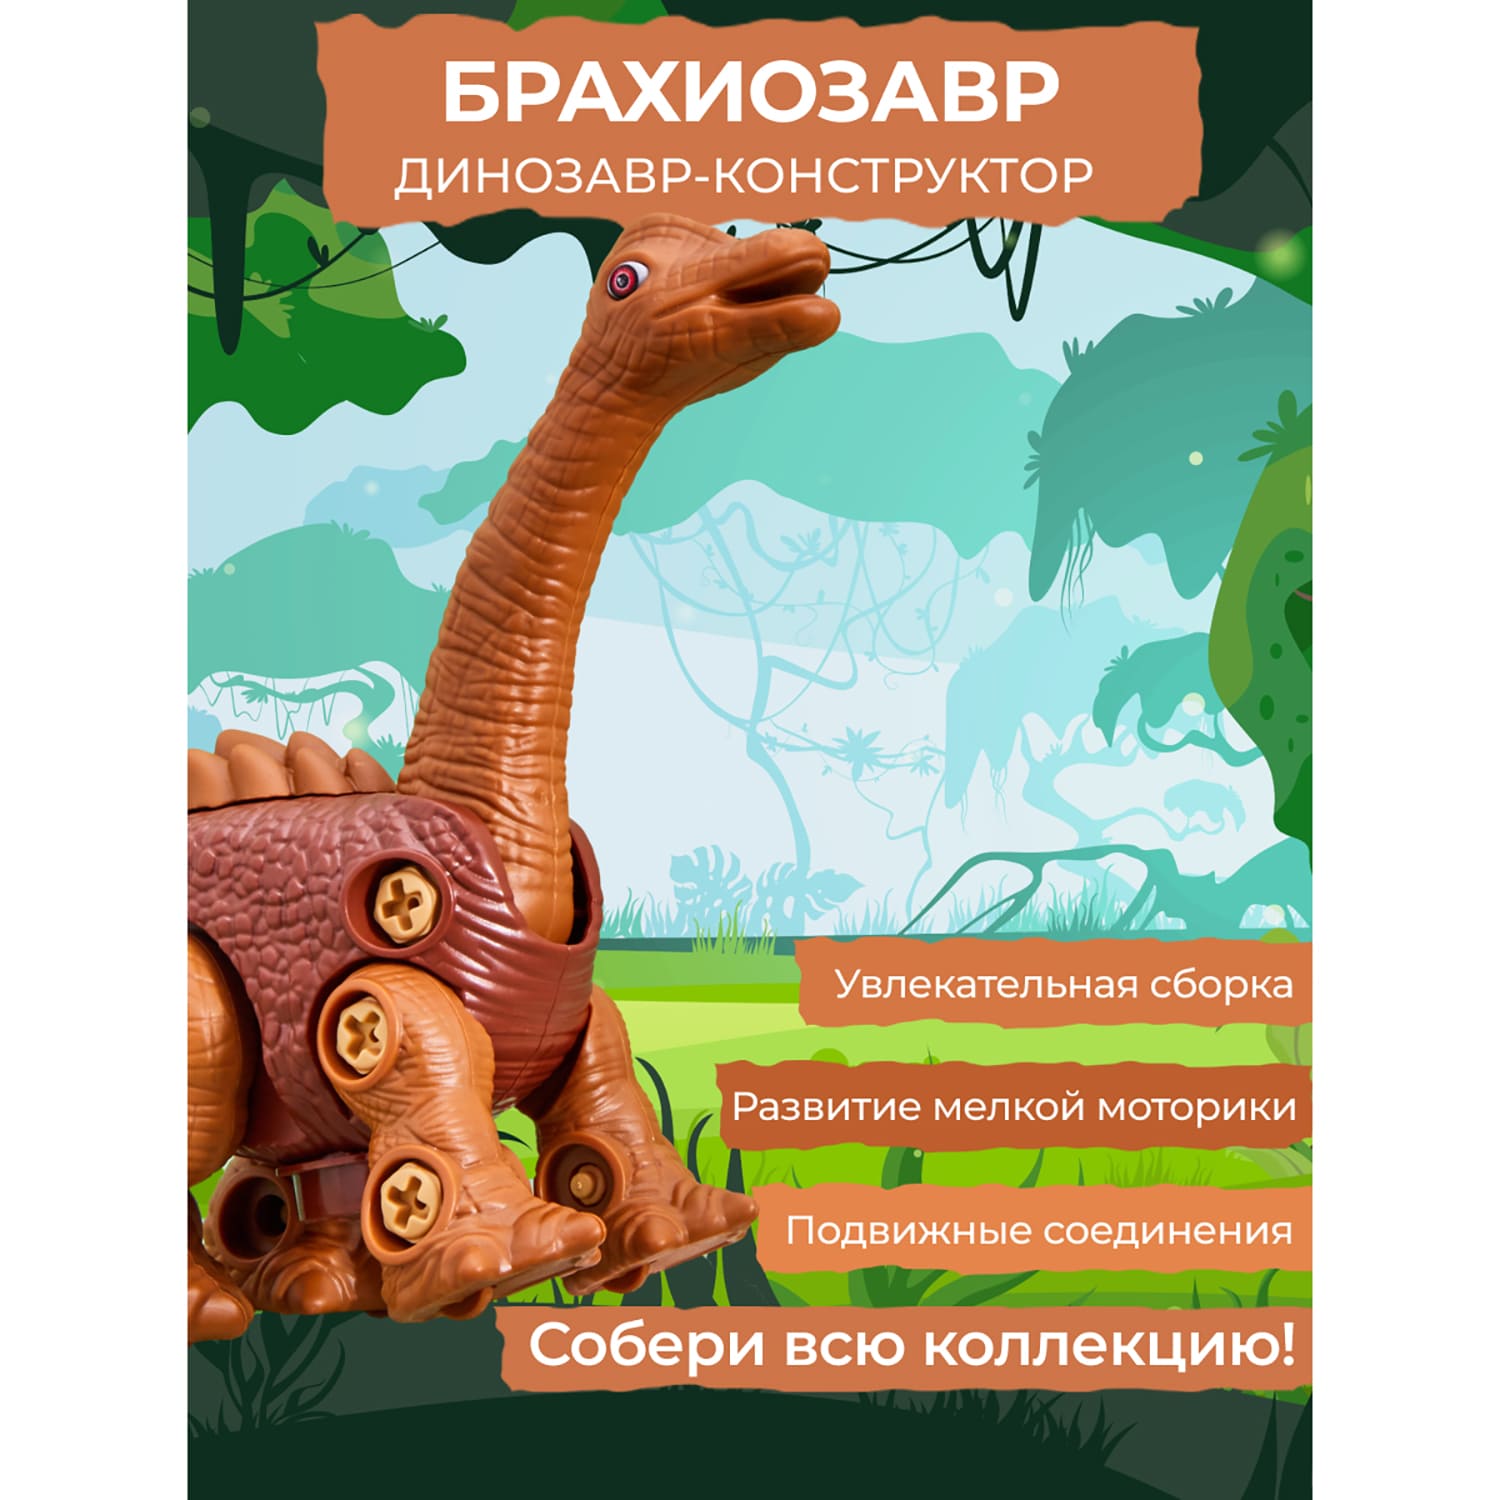 Интерактивный конструктор Smart динозавр брахиозавр с отвёрткой - фото 15